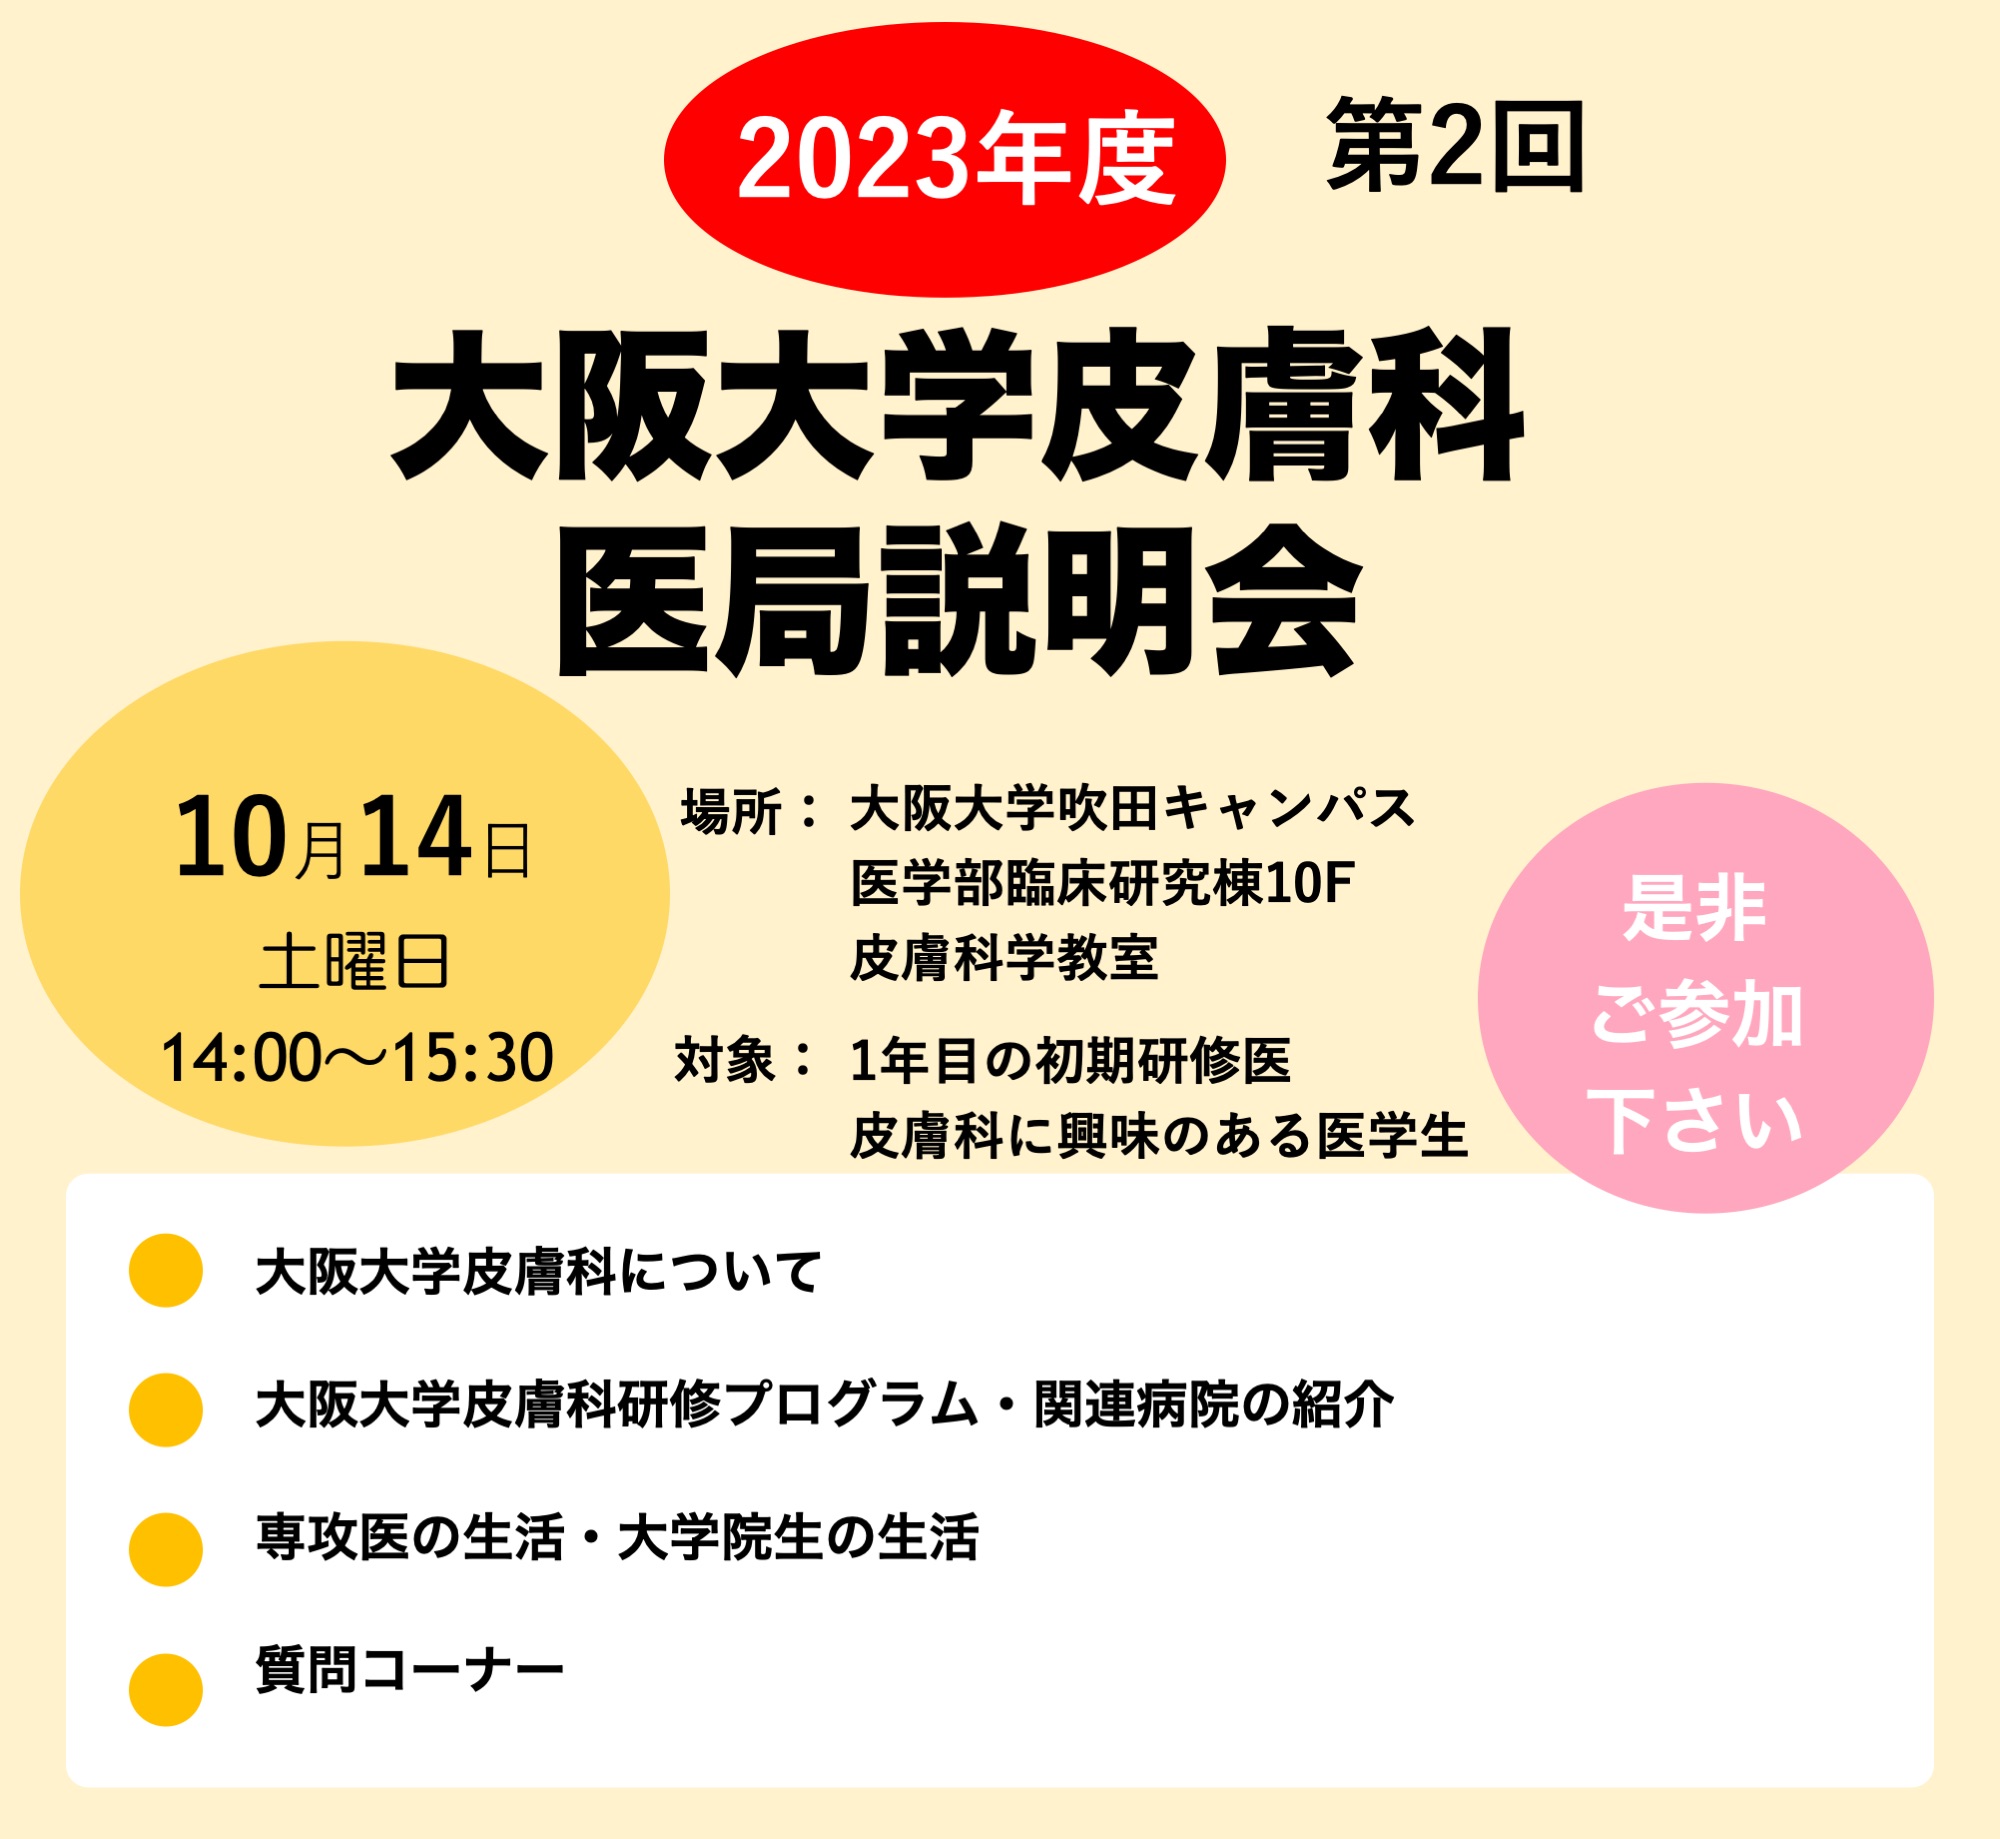 2023年度 大阪大学皮膚科医局説明会のお知らせ